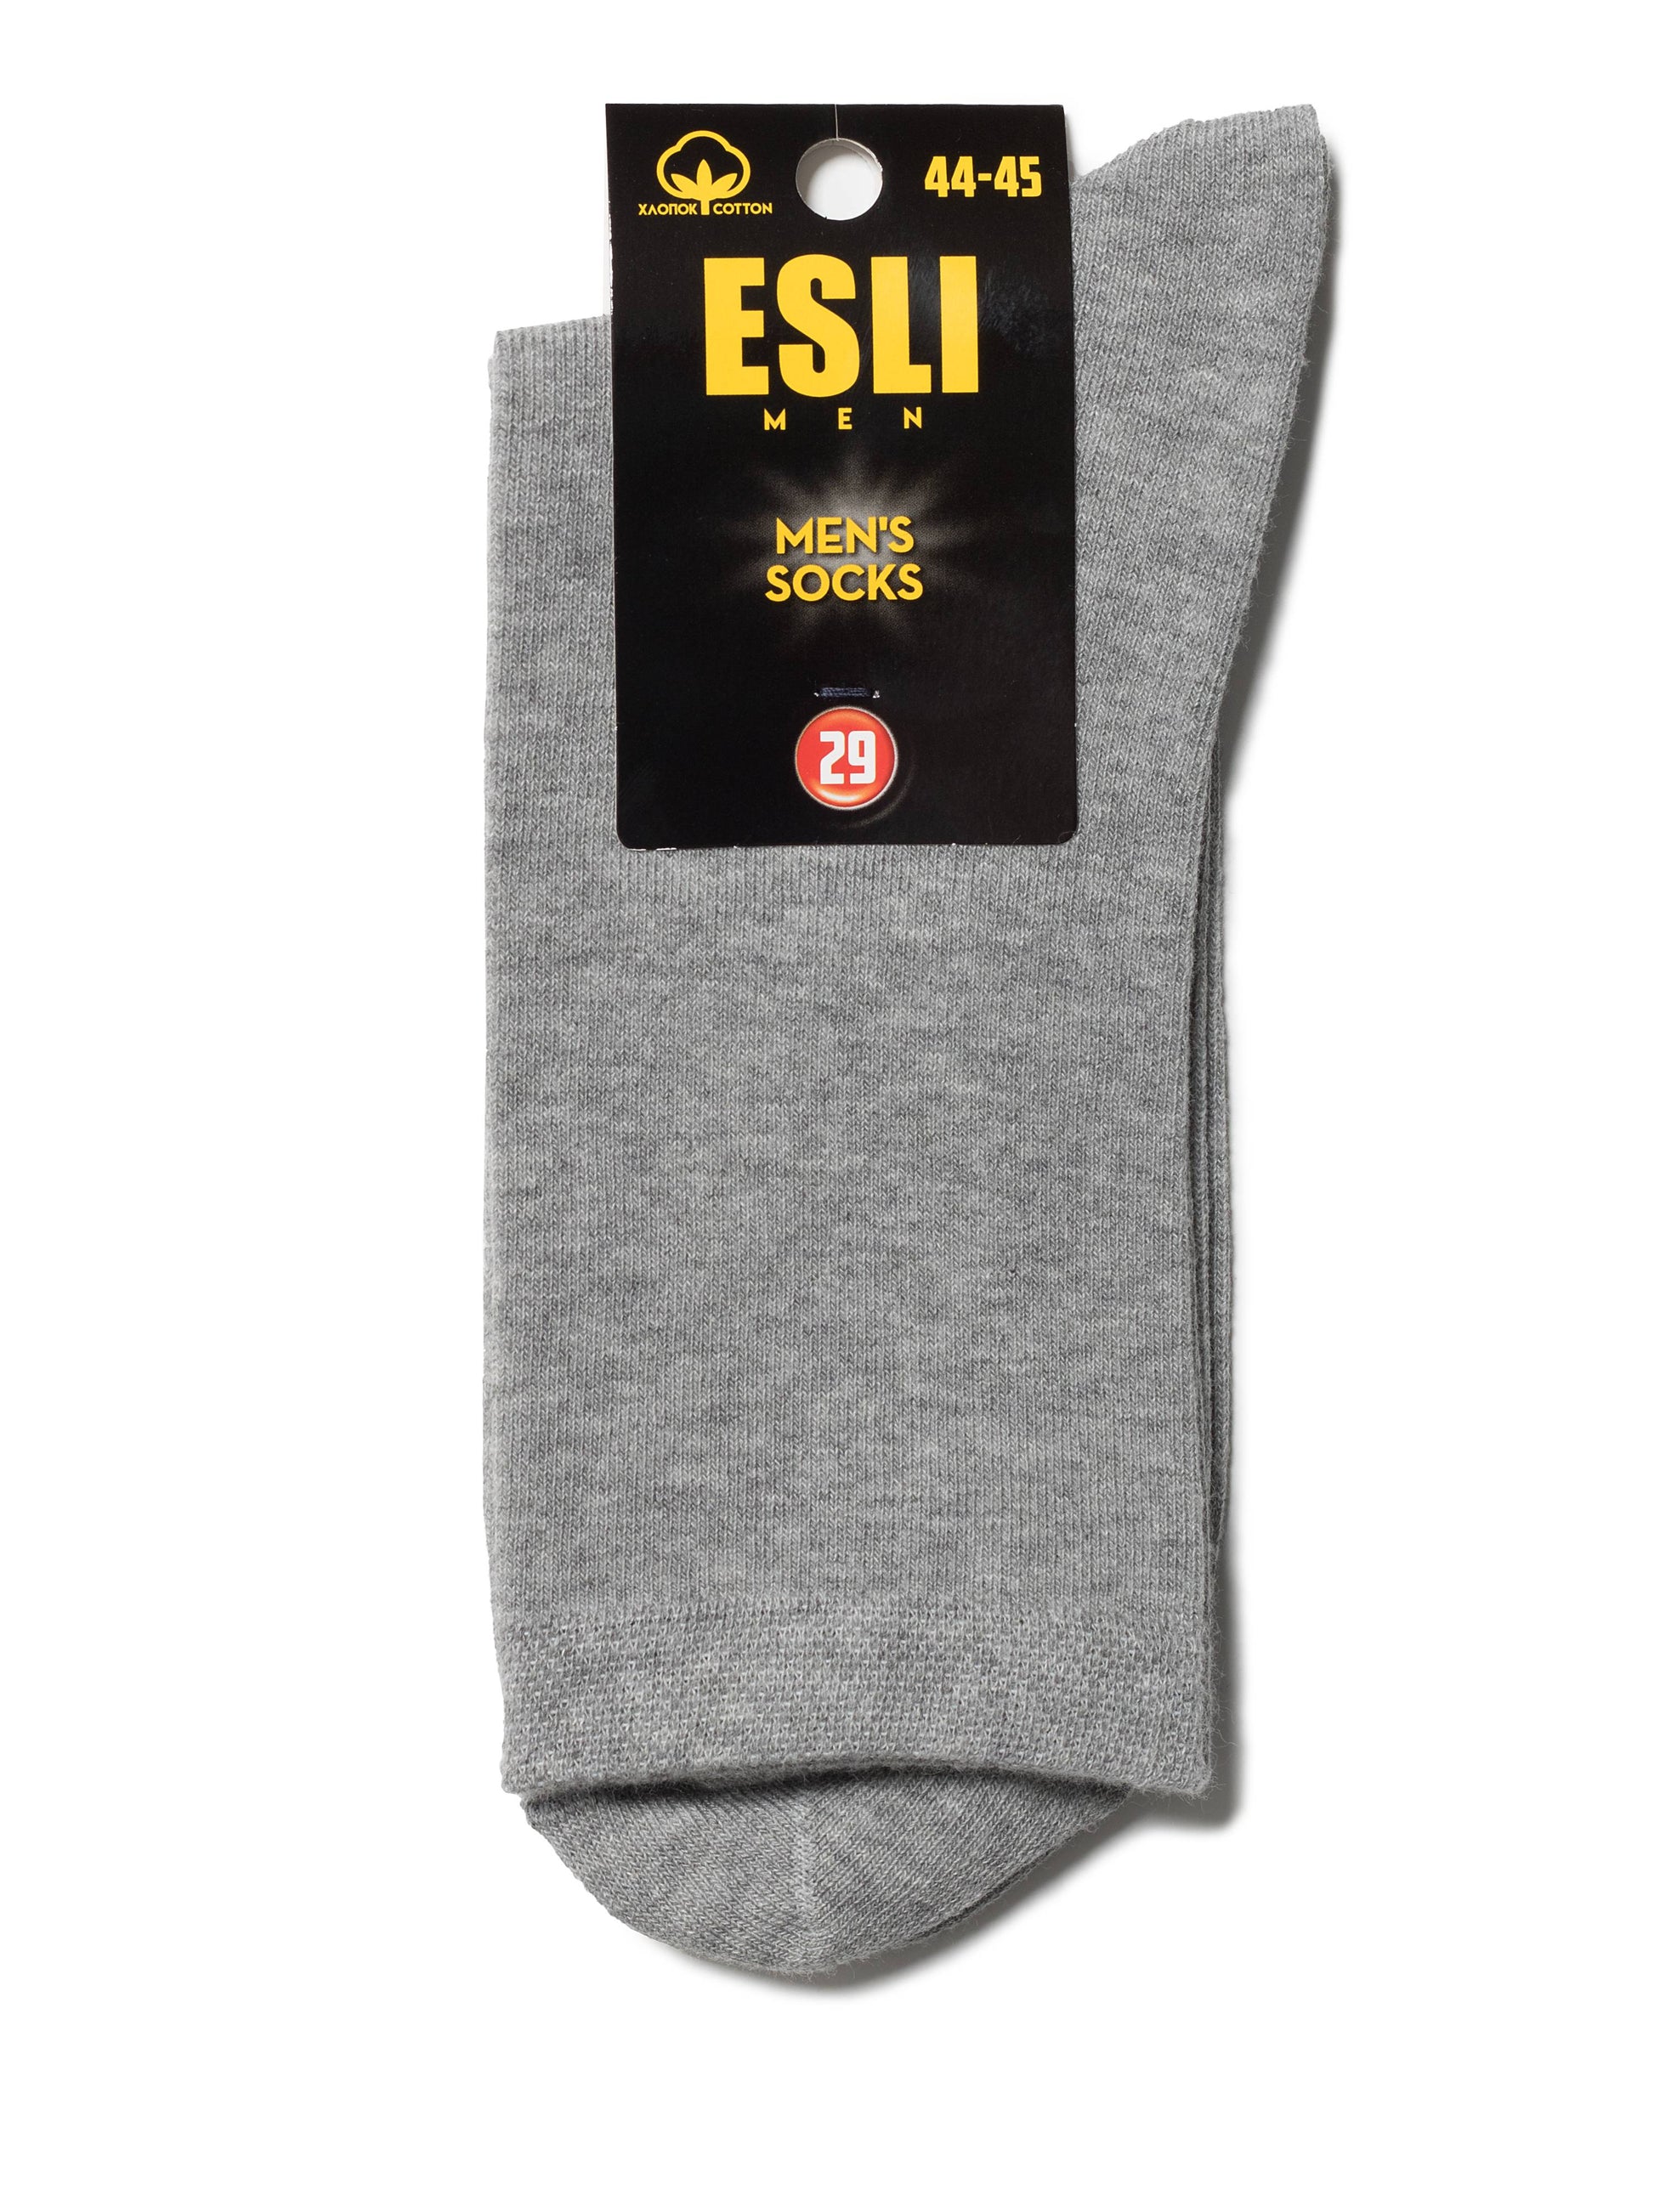 Lot of 6 pairs - Conte Classic Cotton Men's Socks - Esli #19С